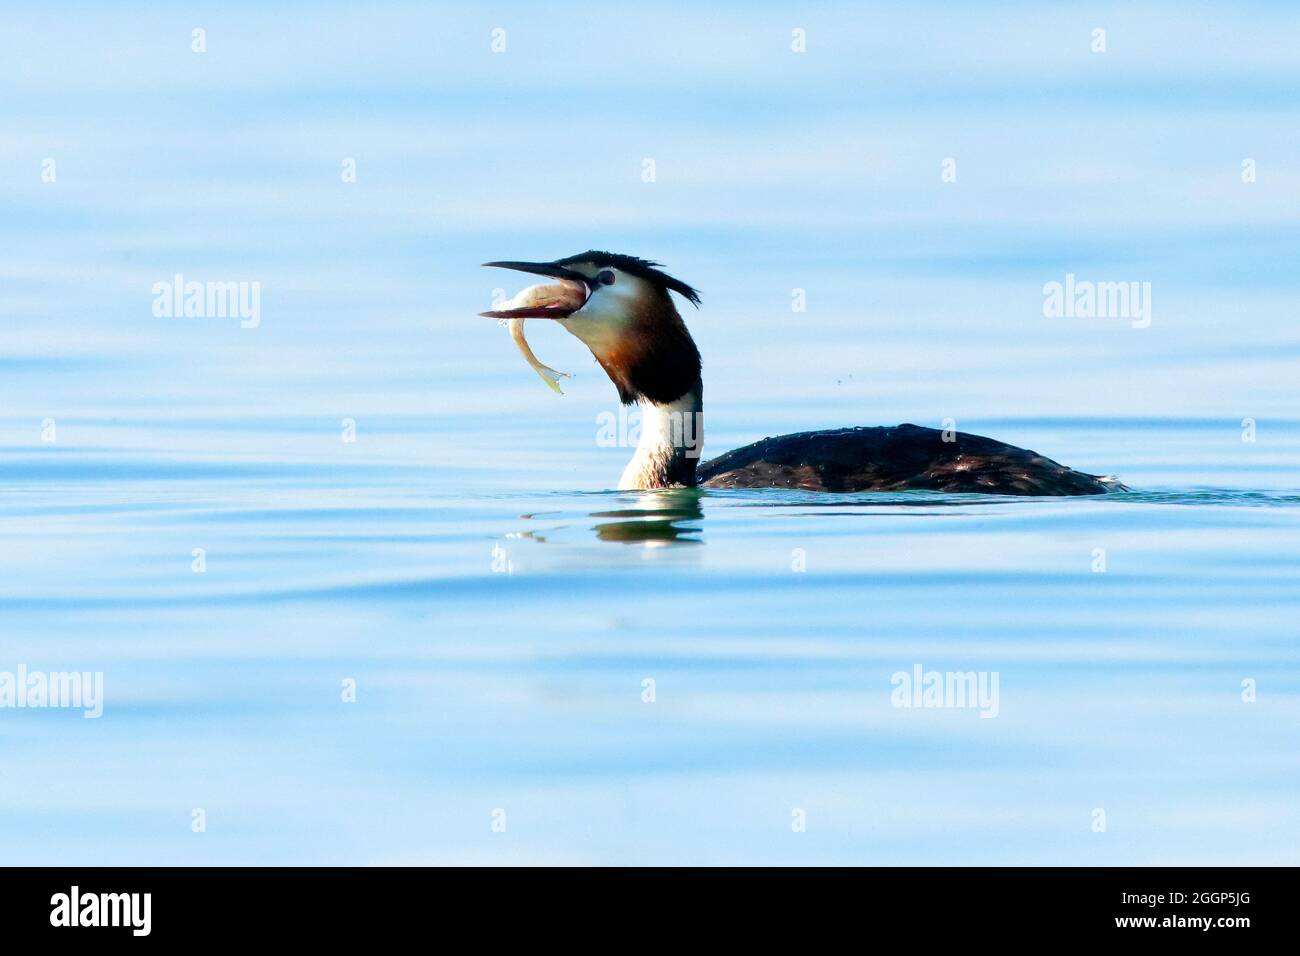 Haubentaucher im Prachtkleid mit Fisch im Schnabel, schwimmt in blauem Wasser, Europa Stock Photo